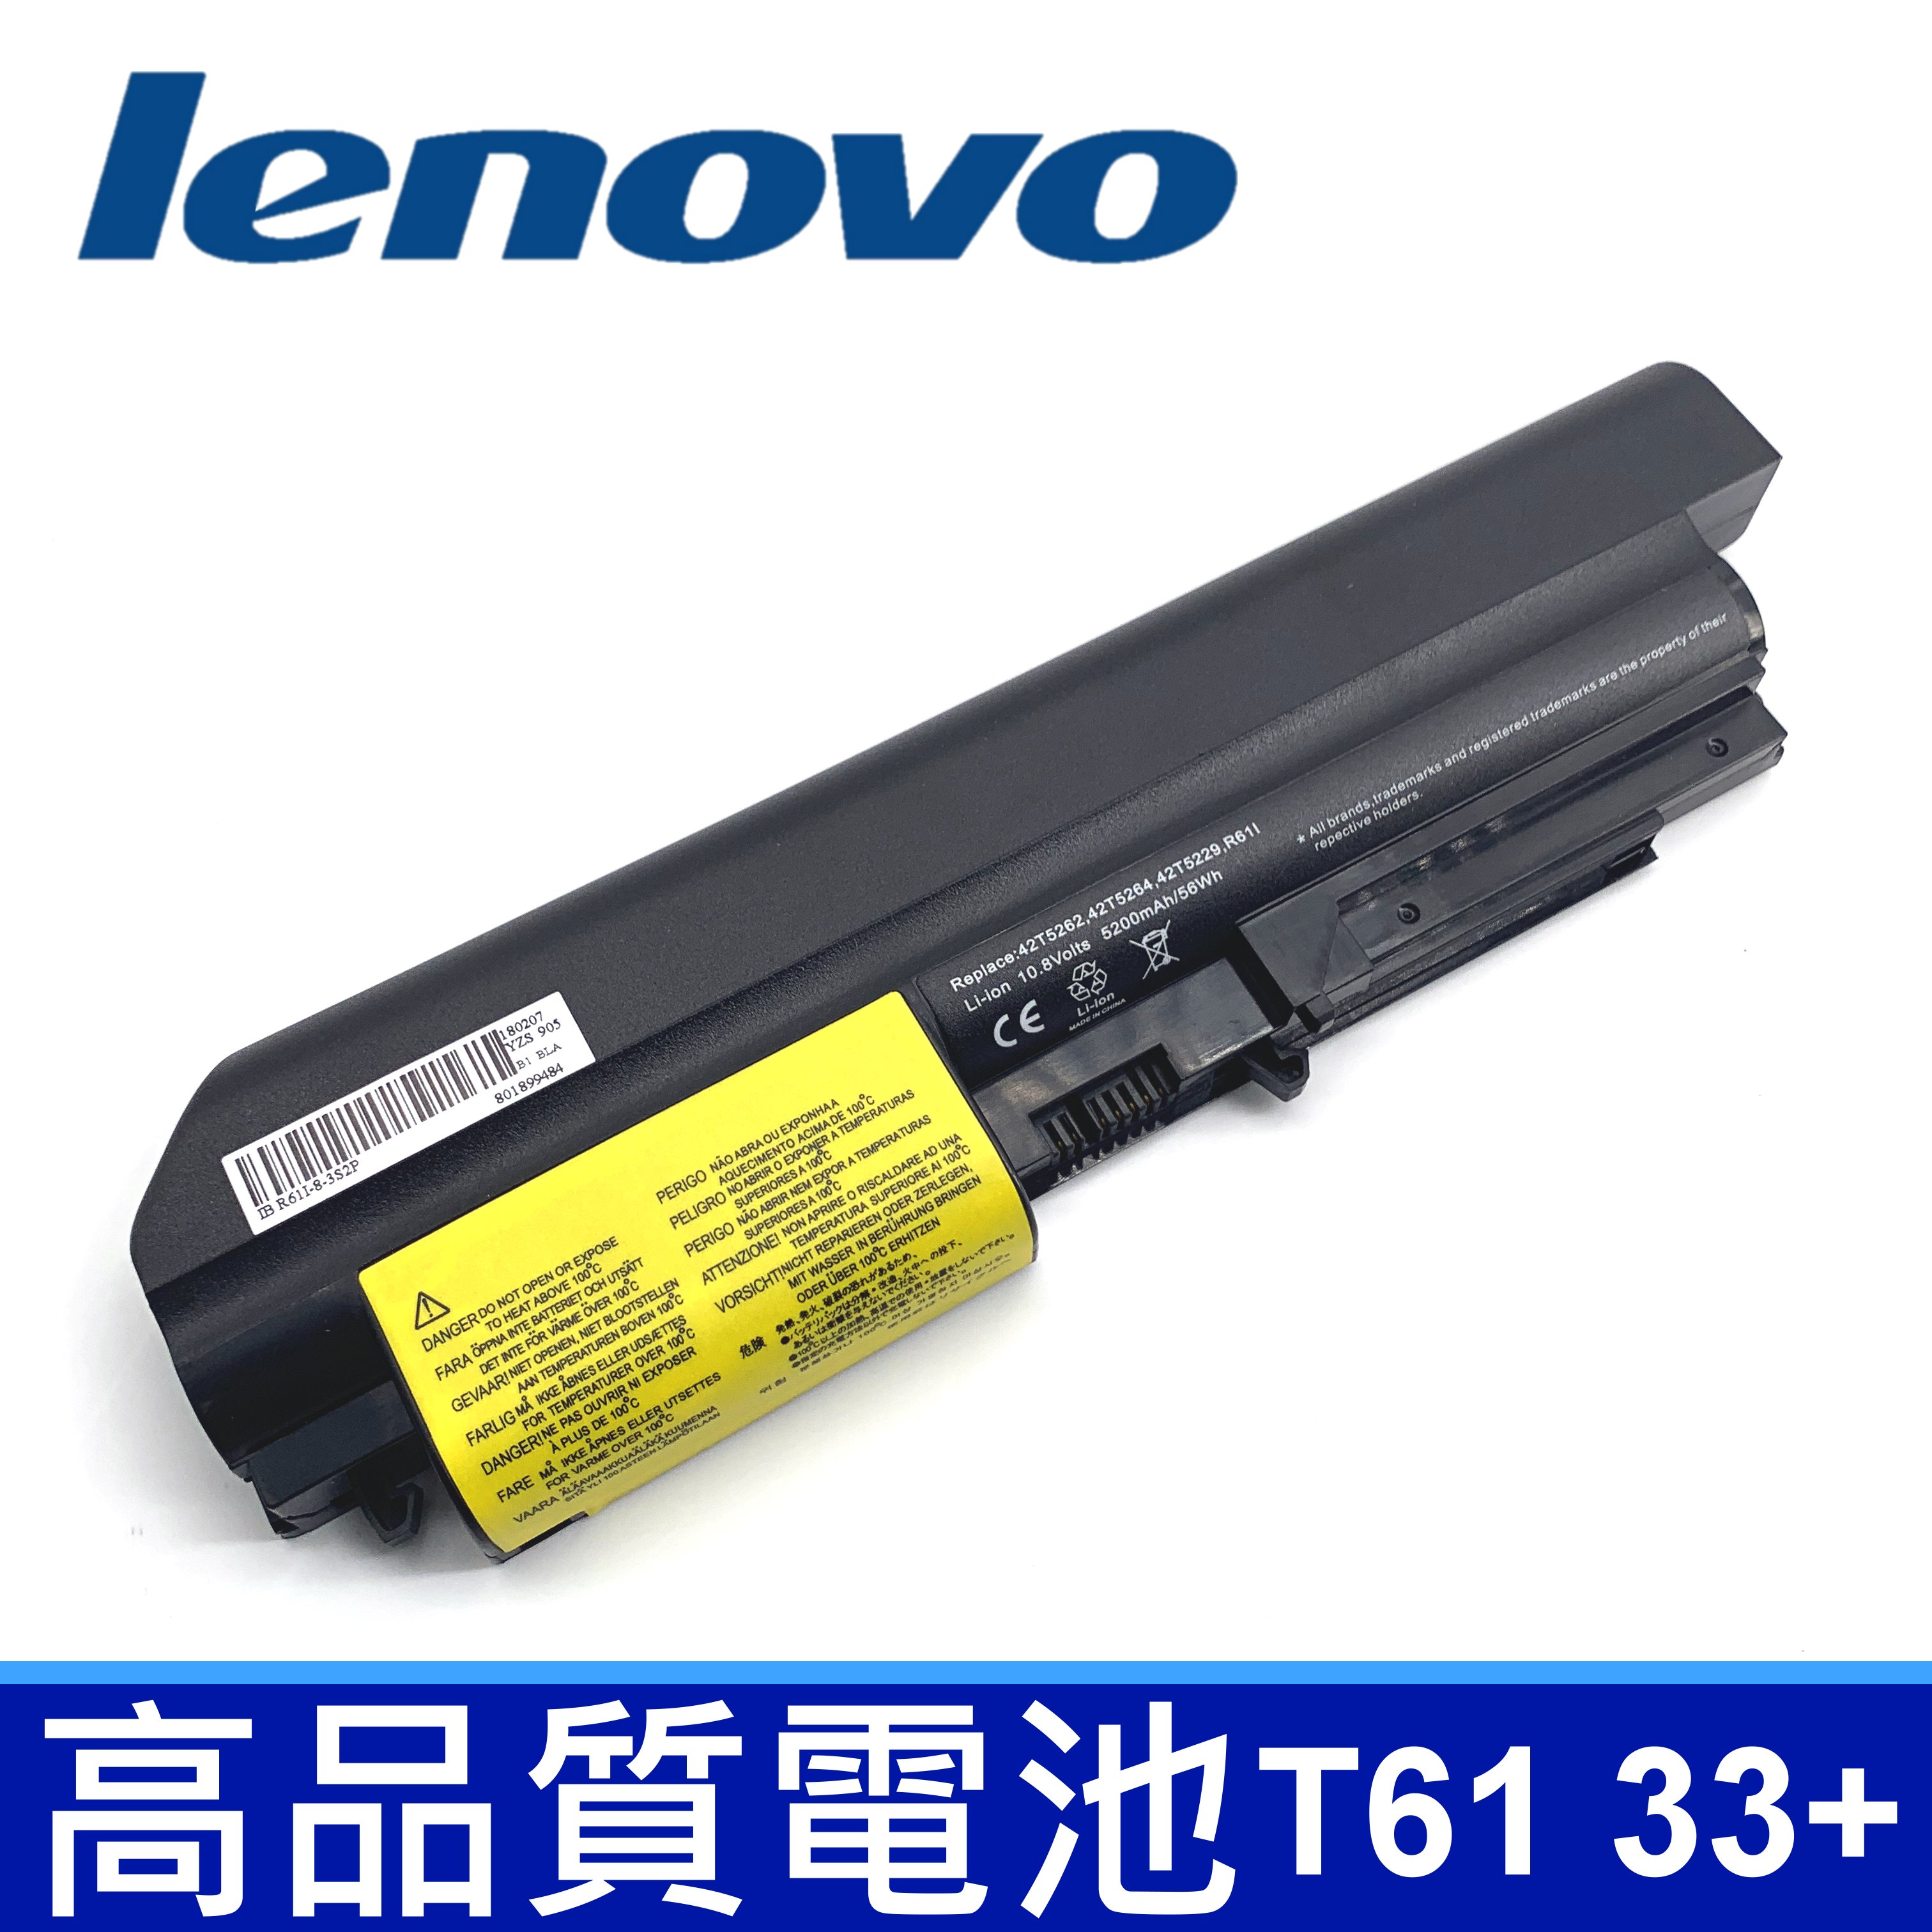 LENOVO T61 6芯 原廠規格 電池 42T4530 42T4532 42T4548 42T4645 42T5225 42T5227 42T5262 42T5264 42T4552 R61 R61E R61P R61i T61 T61P T61U T400 R400 R500 SL400 SL500